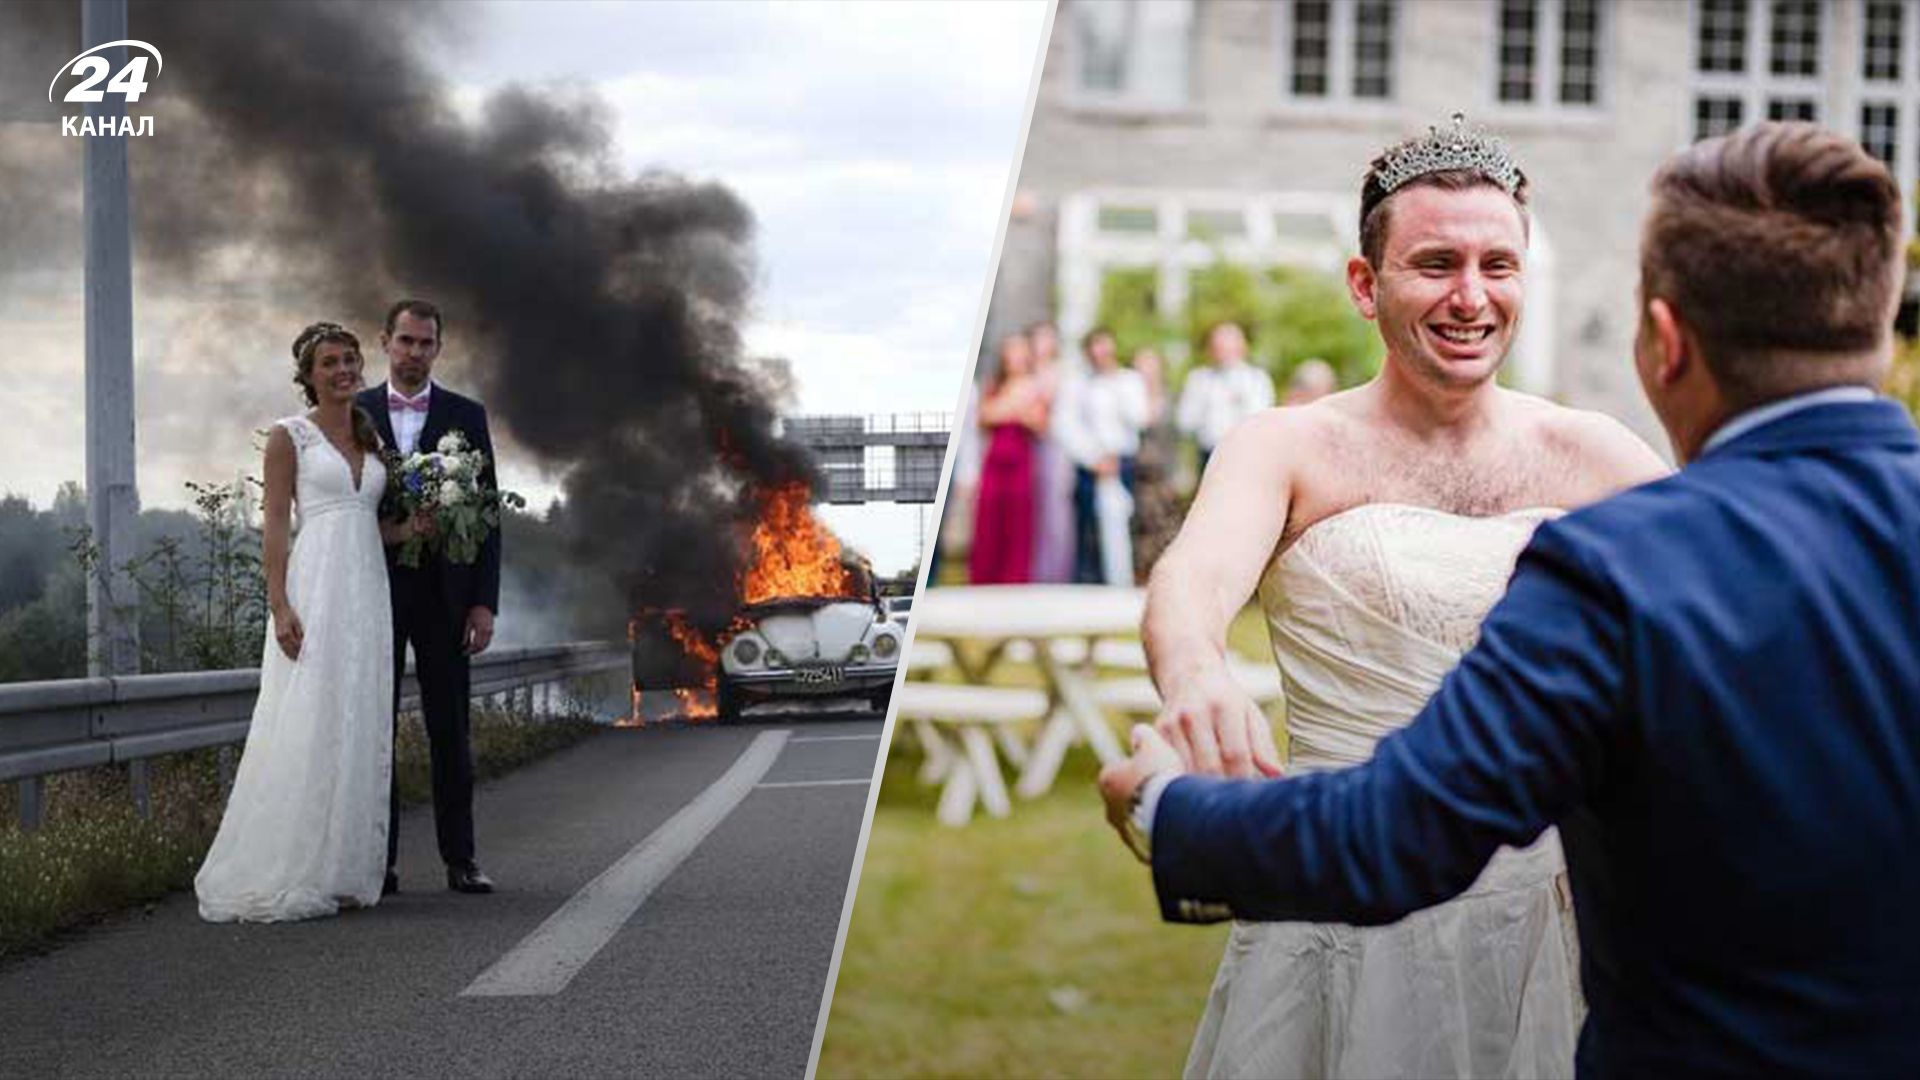 Неудачные фотографии из свадеб, на которых произошли курьезные события